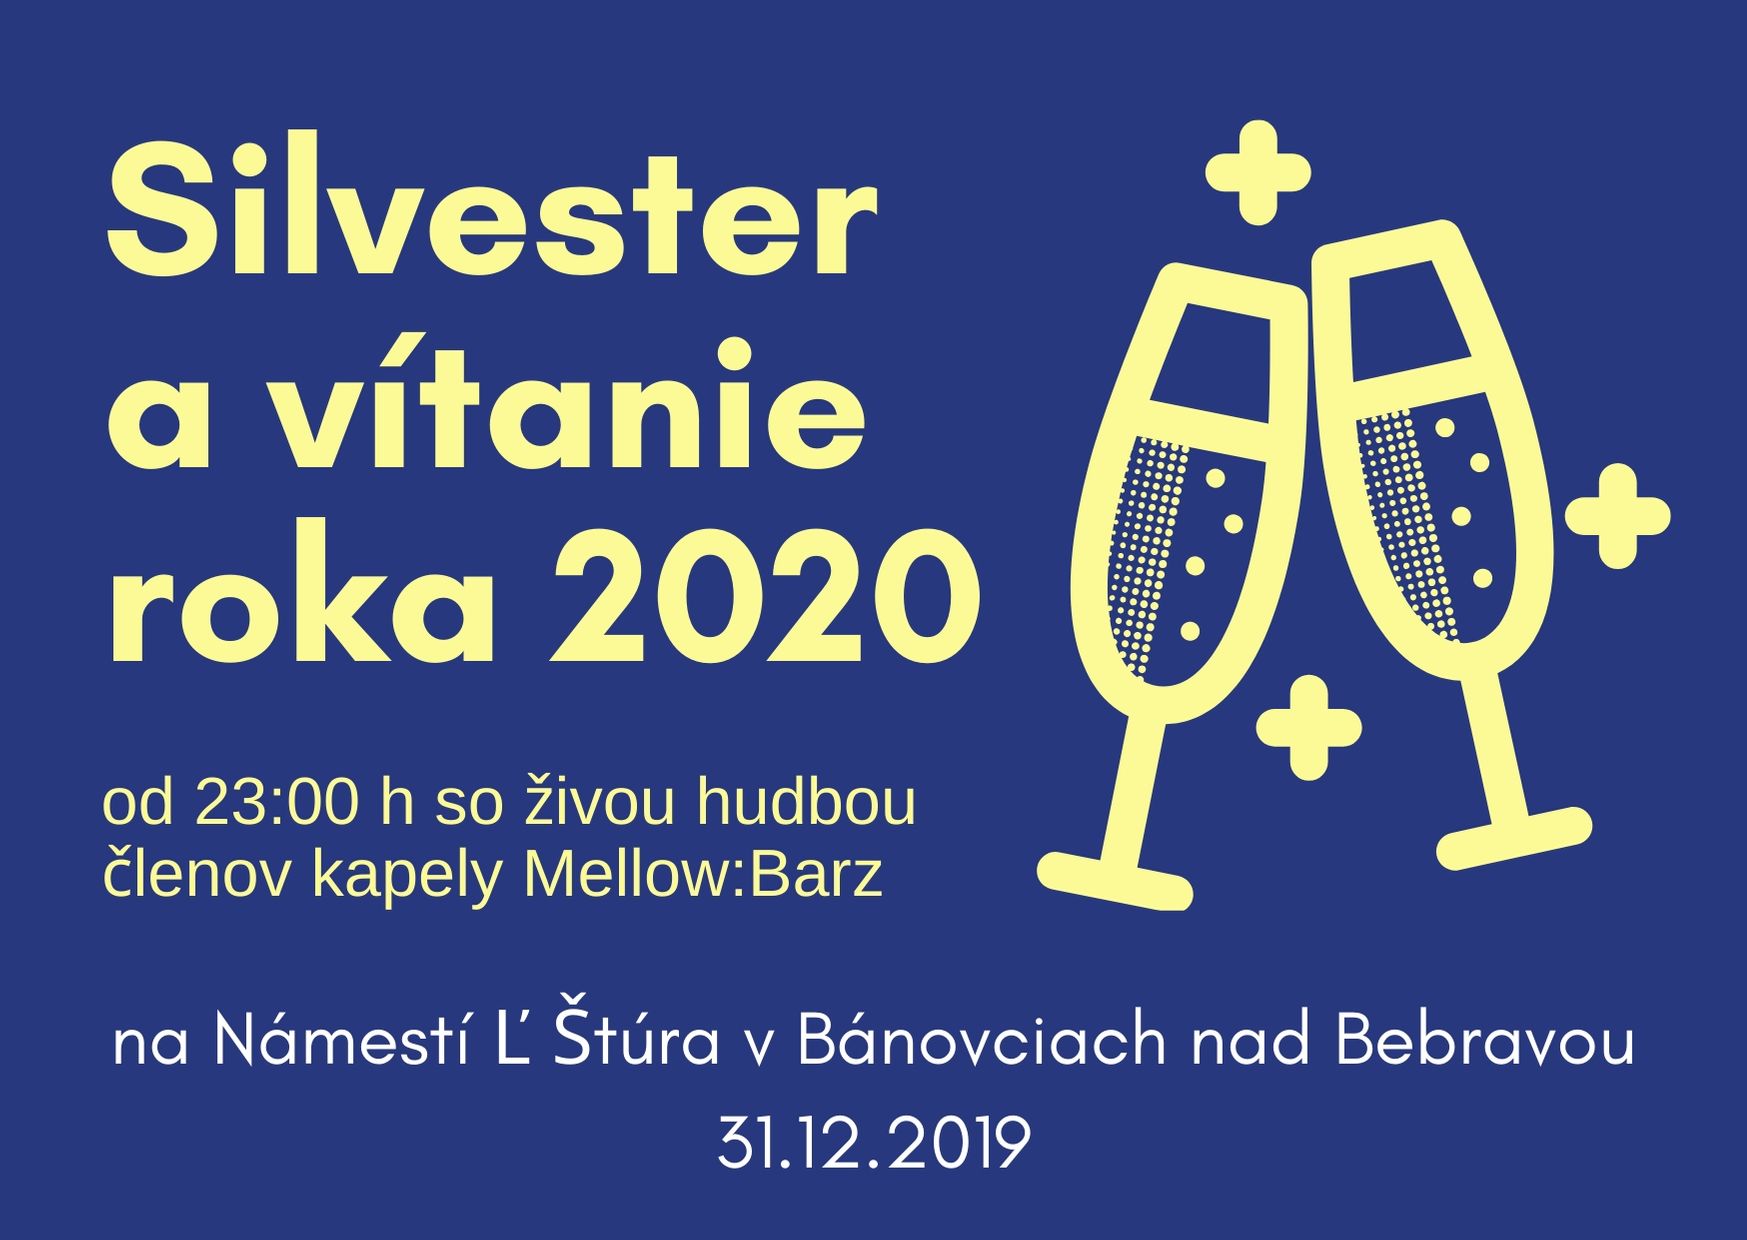 Silvester a vítanie roka 2020 Bánovce nad Bebravou